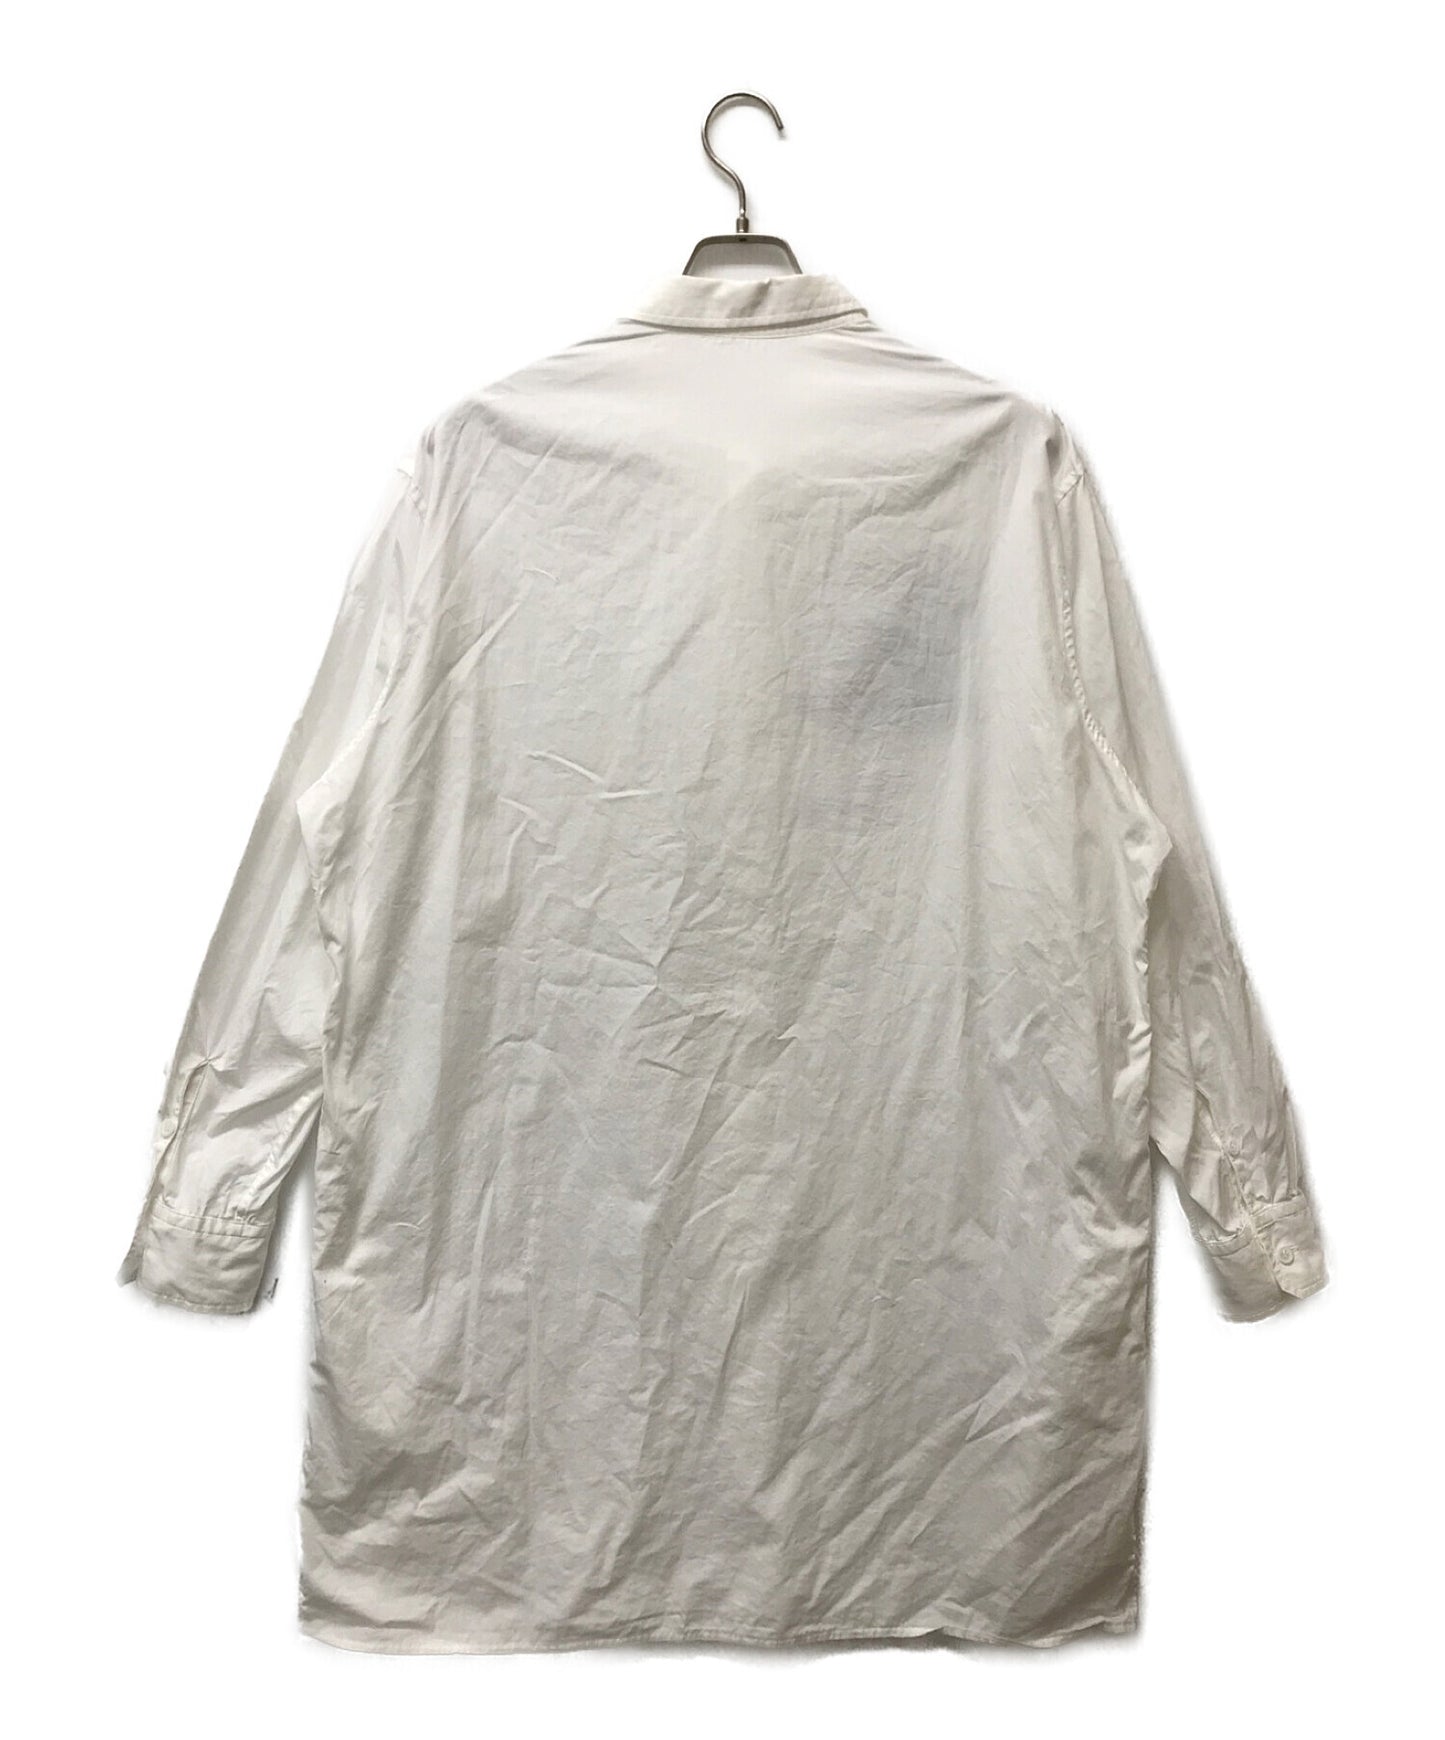 yohji yamamoto pour homme 드로잉 프린트 일반 칼라 긴 셔츠 hh-b76-035